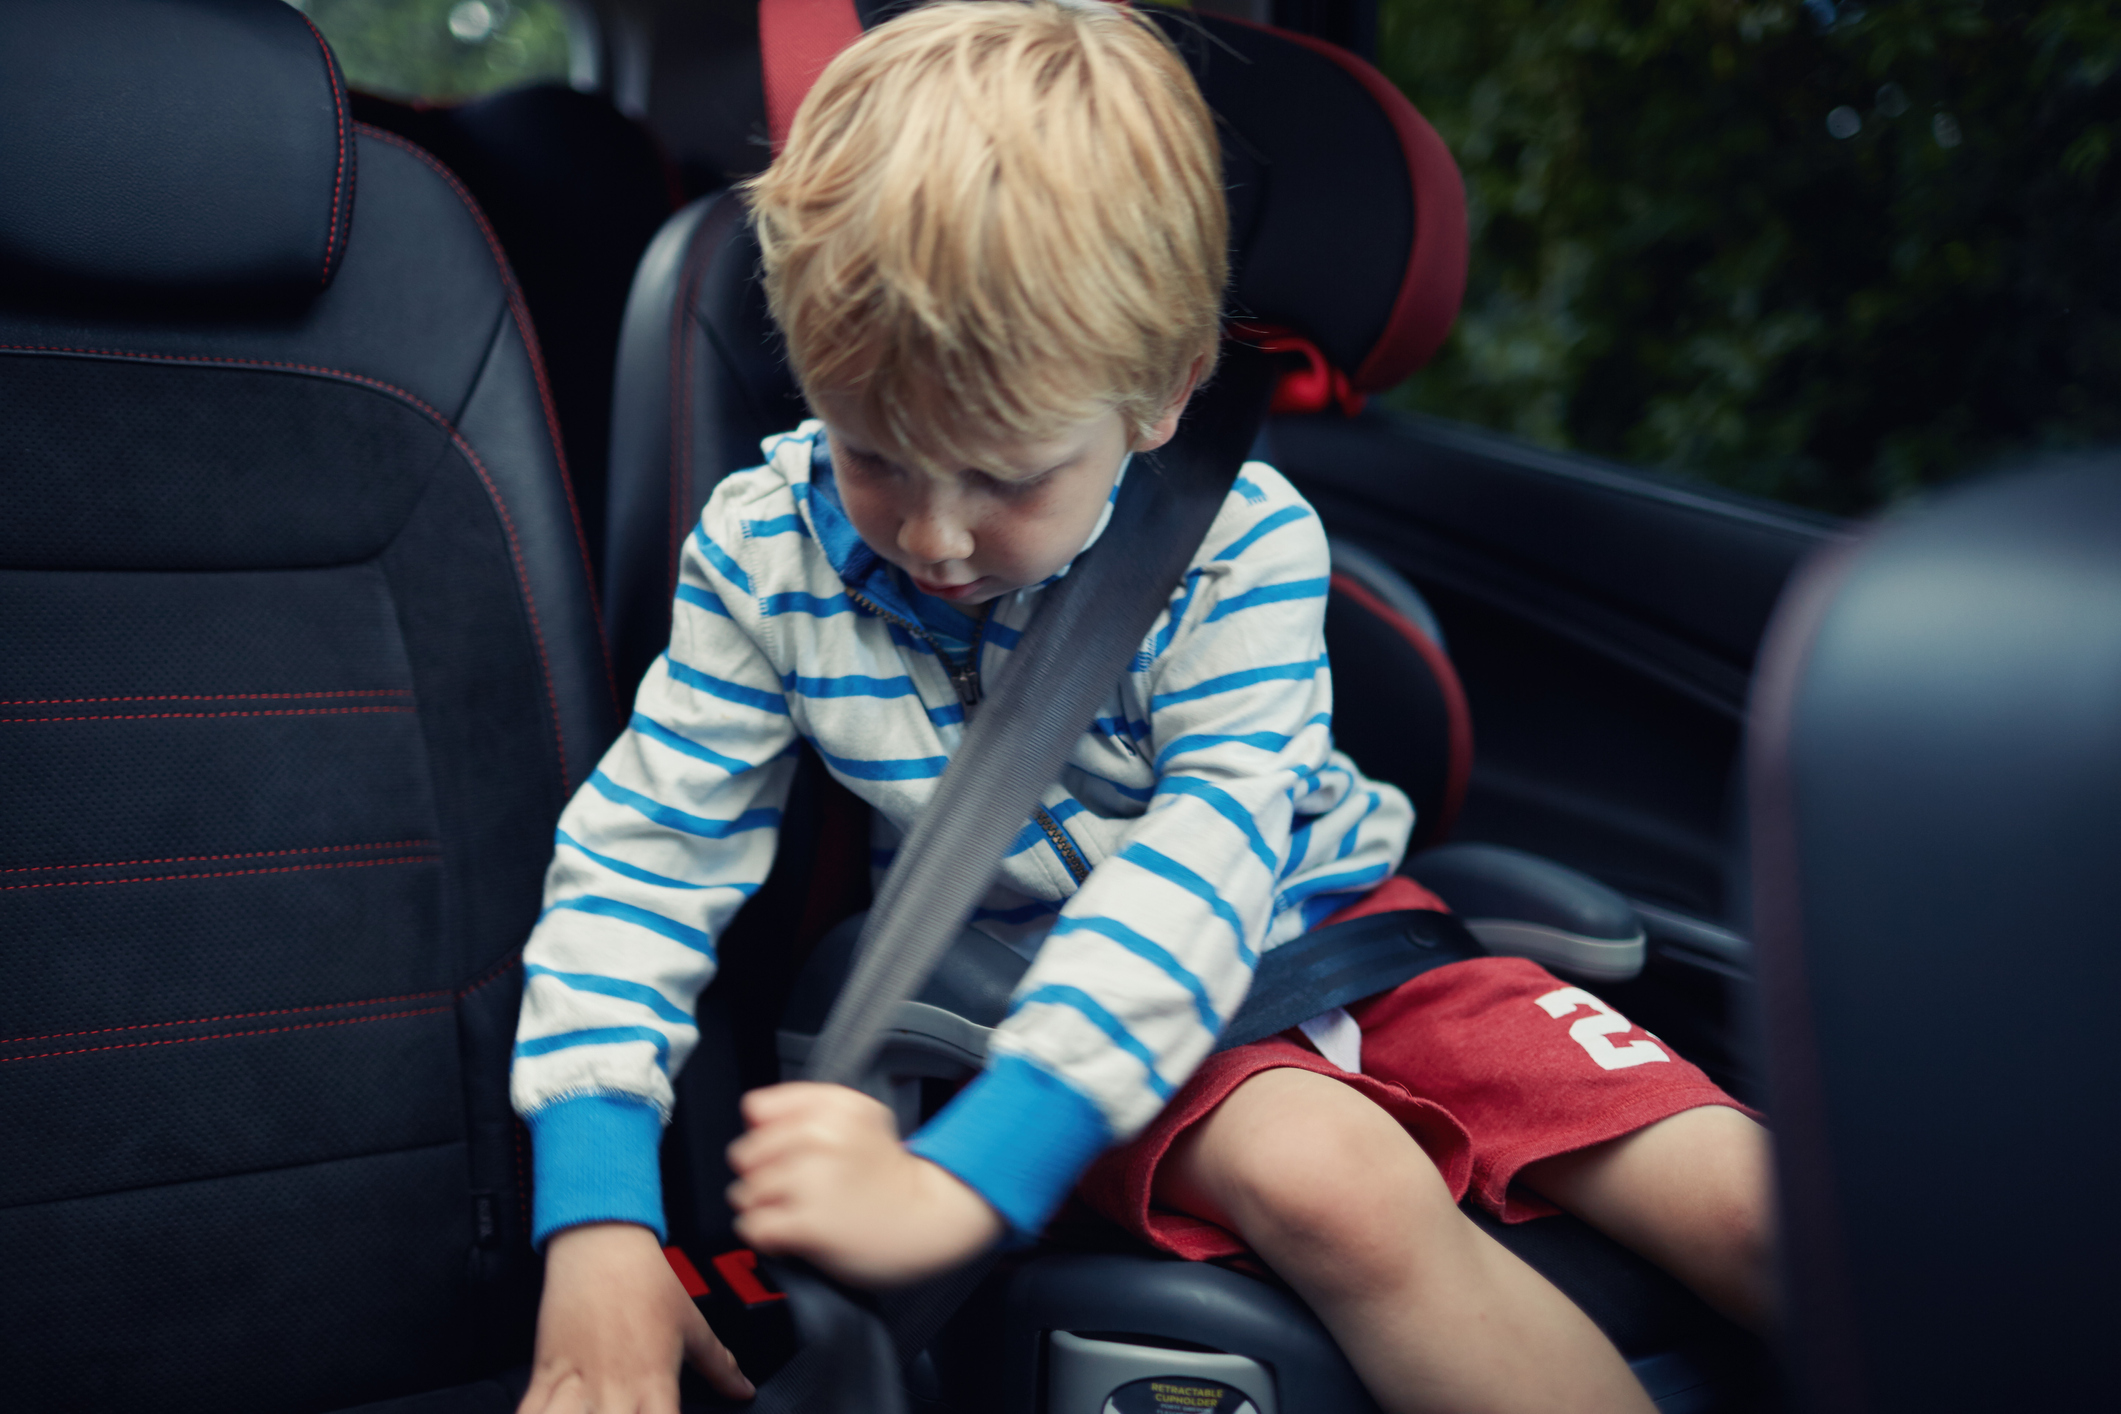 Baby im Auto: Sicherheit geht vor - Auswahl und Befestigung der